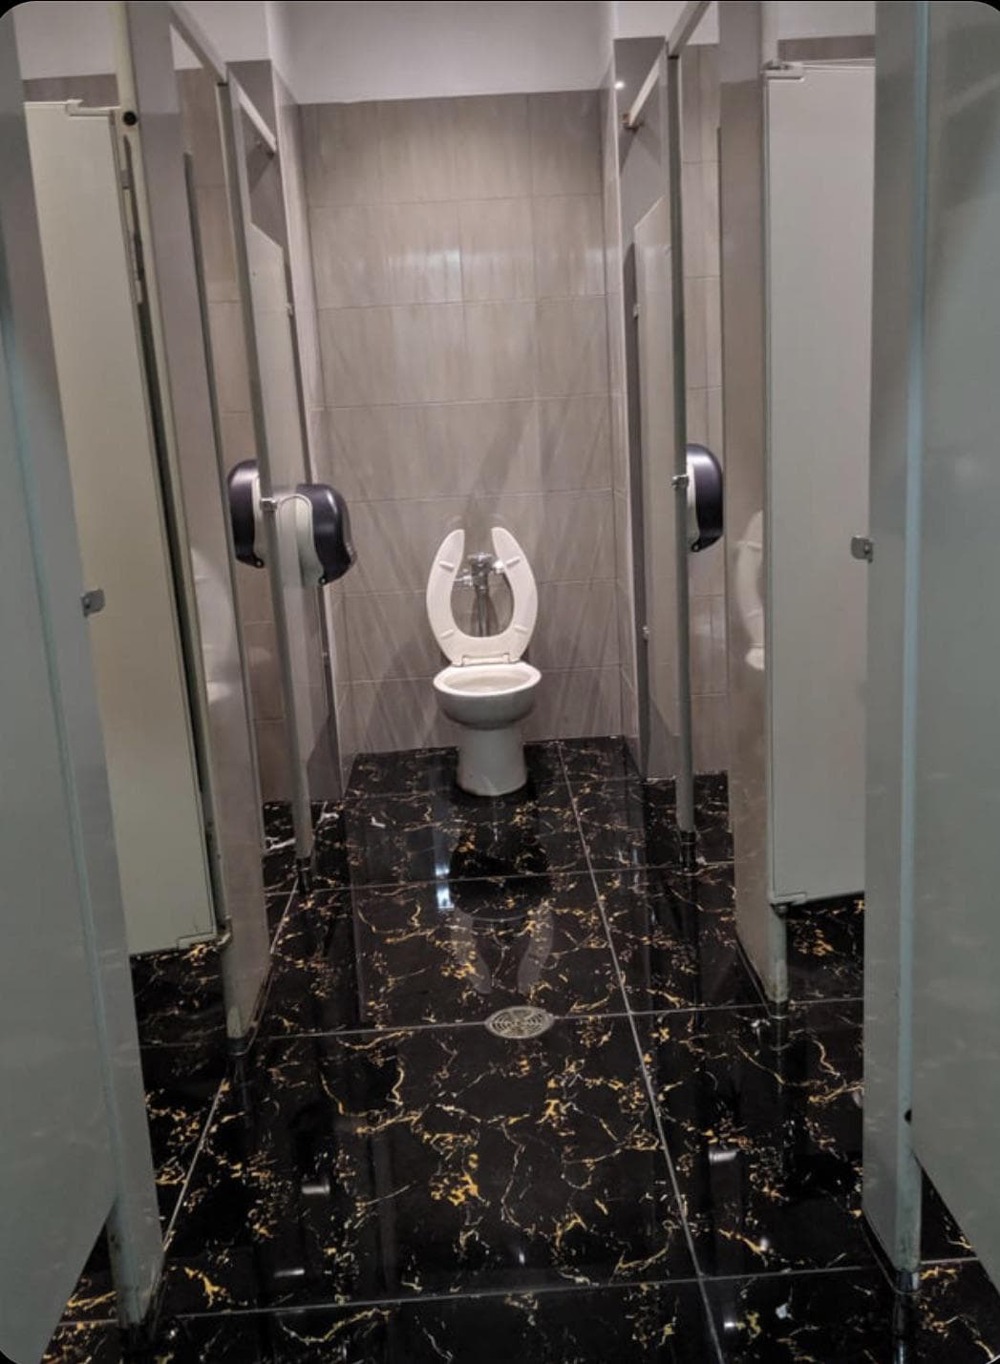 Рандомный туалет в общественной уборной. Зачем и почему?